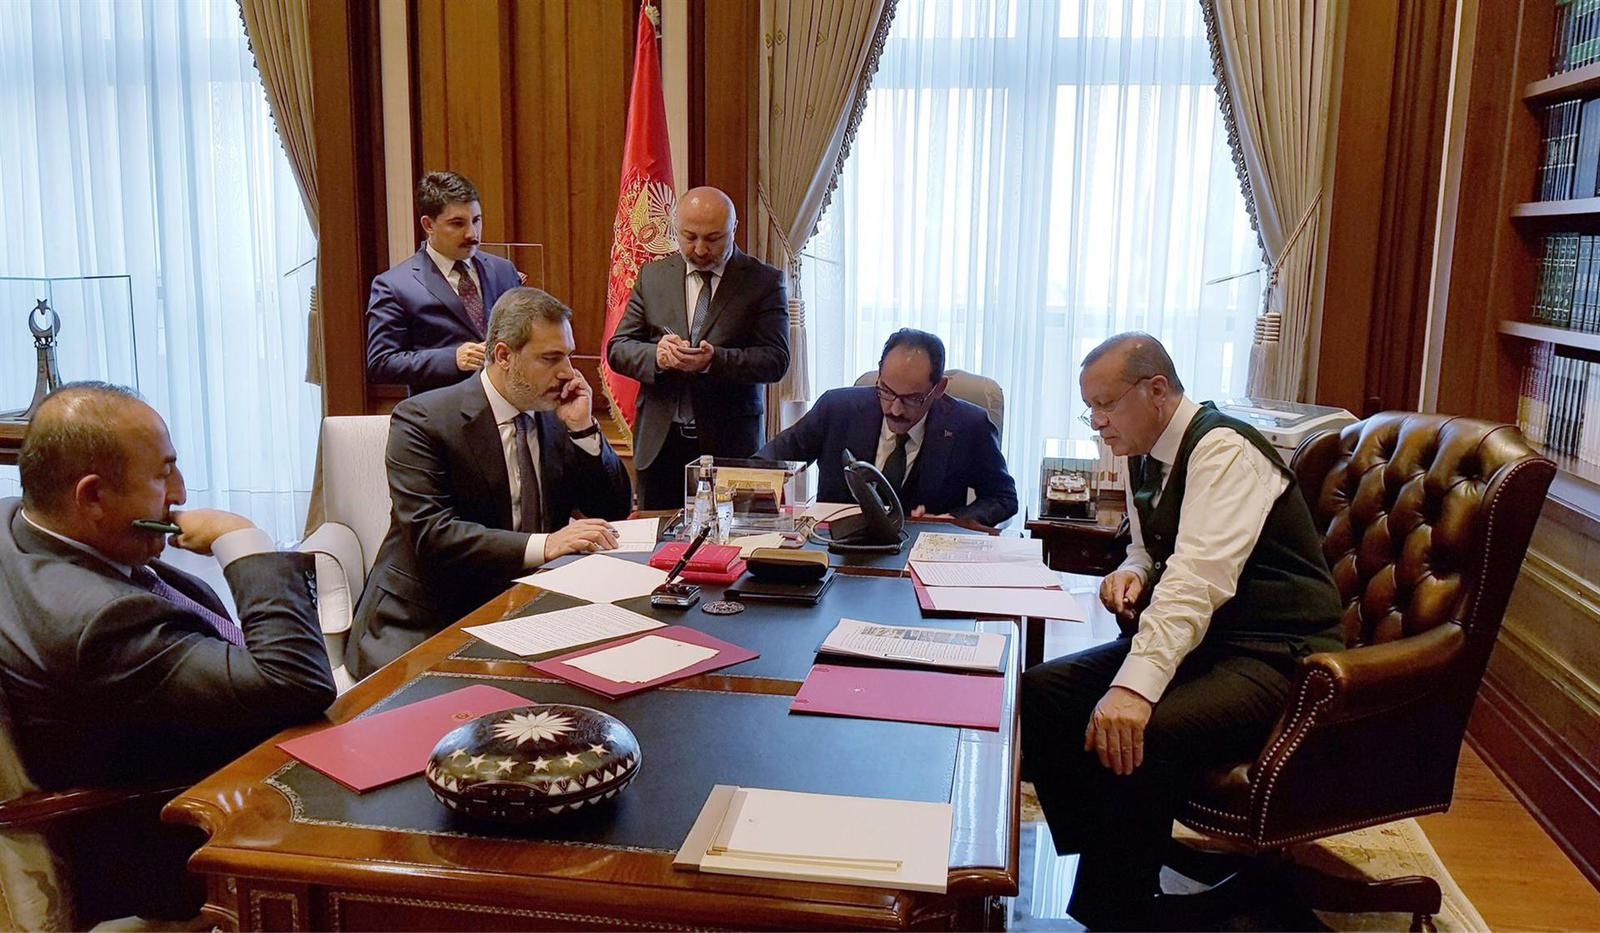 الرئيس التركي رجب طيب اردوغان مع عدد من مساعديه وفريقه الحكومي